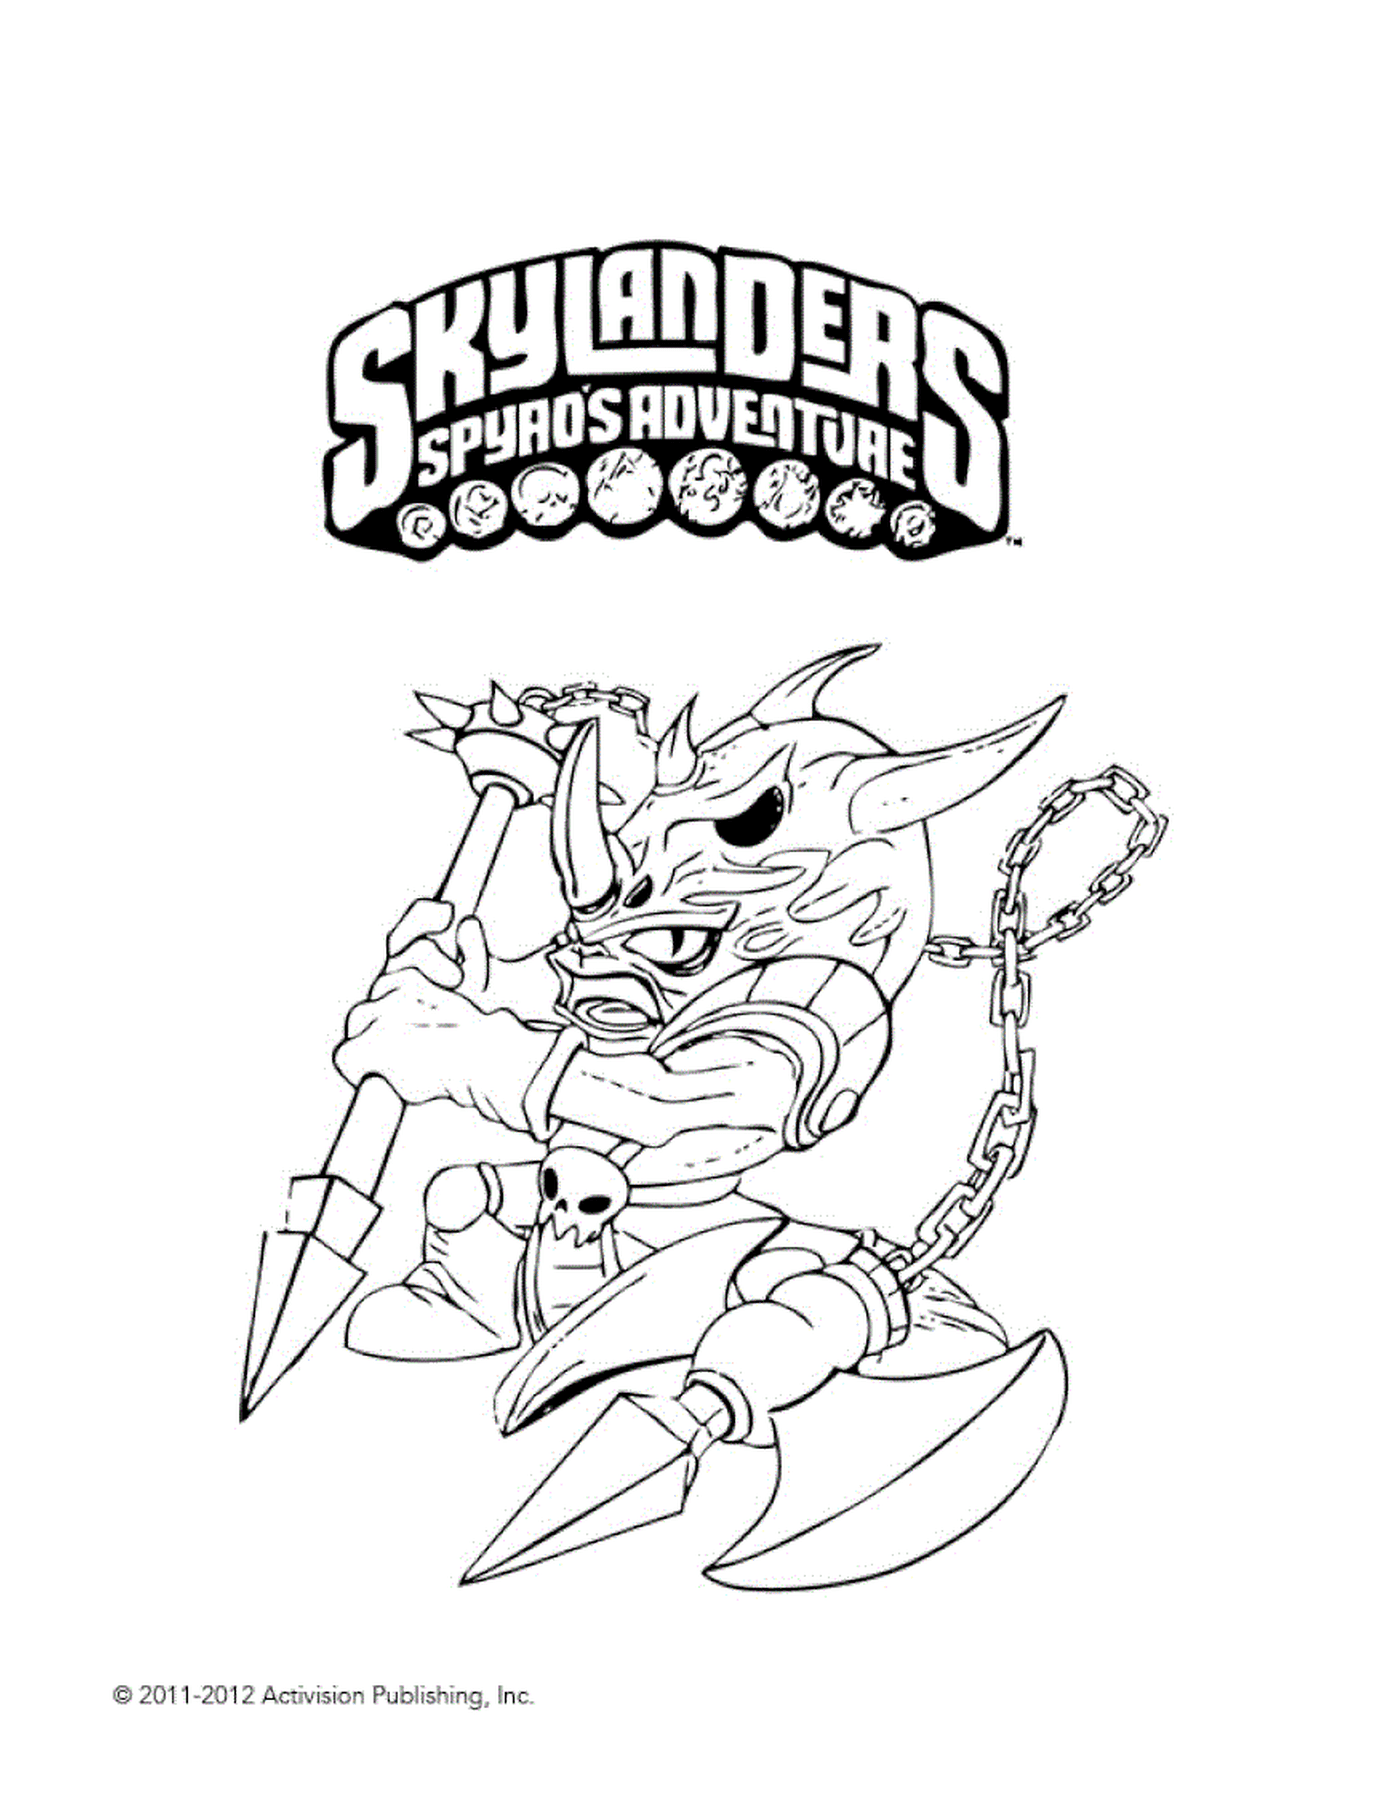   Skylanders Voodood malicieux 